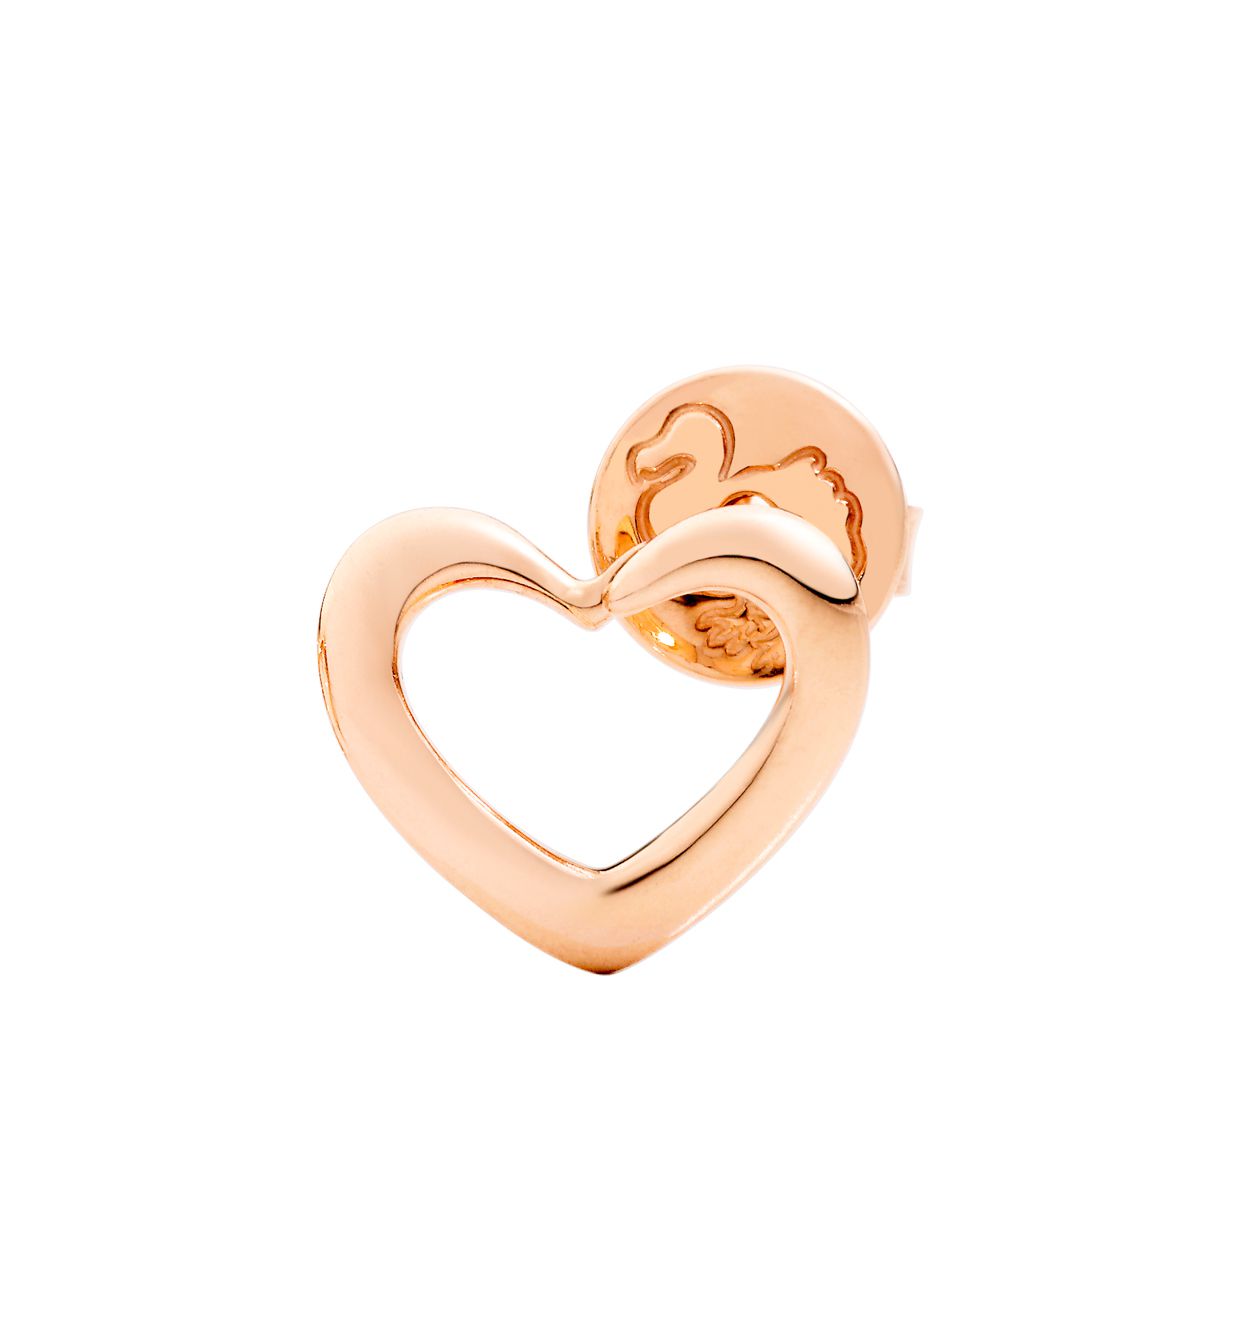 DoDo Heart Silhouette Earring in 9k Rose Gold - Orsini Jewellers NZ